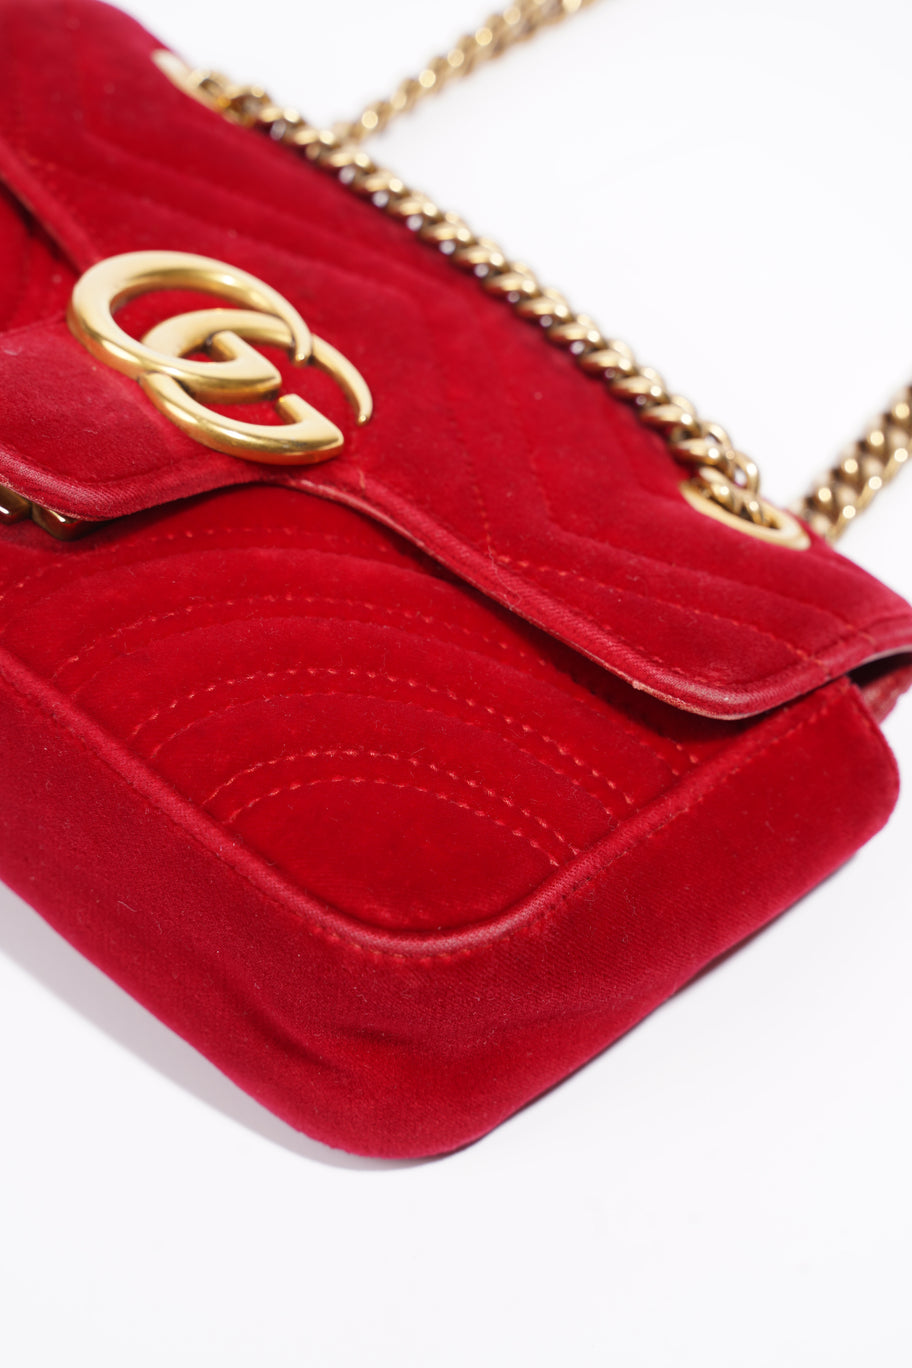 GG Marmont Bag Red Velvet Mini Image 13